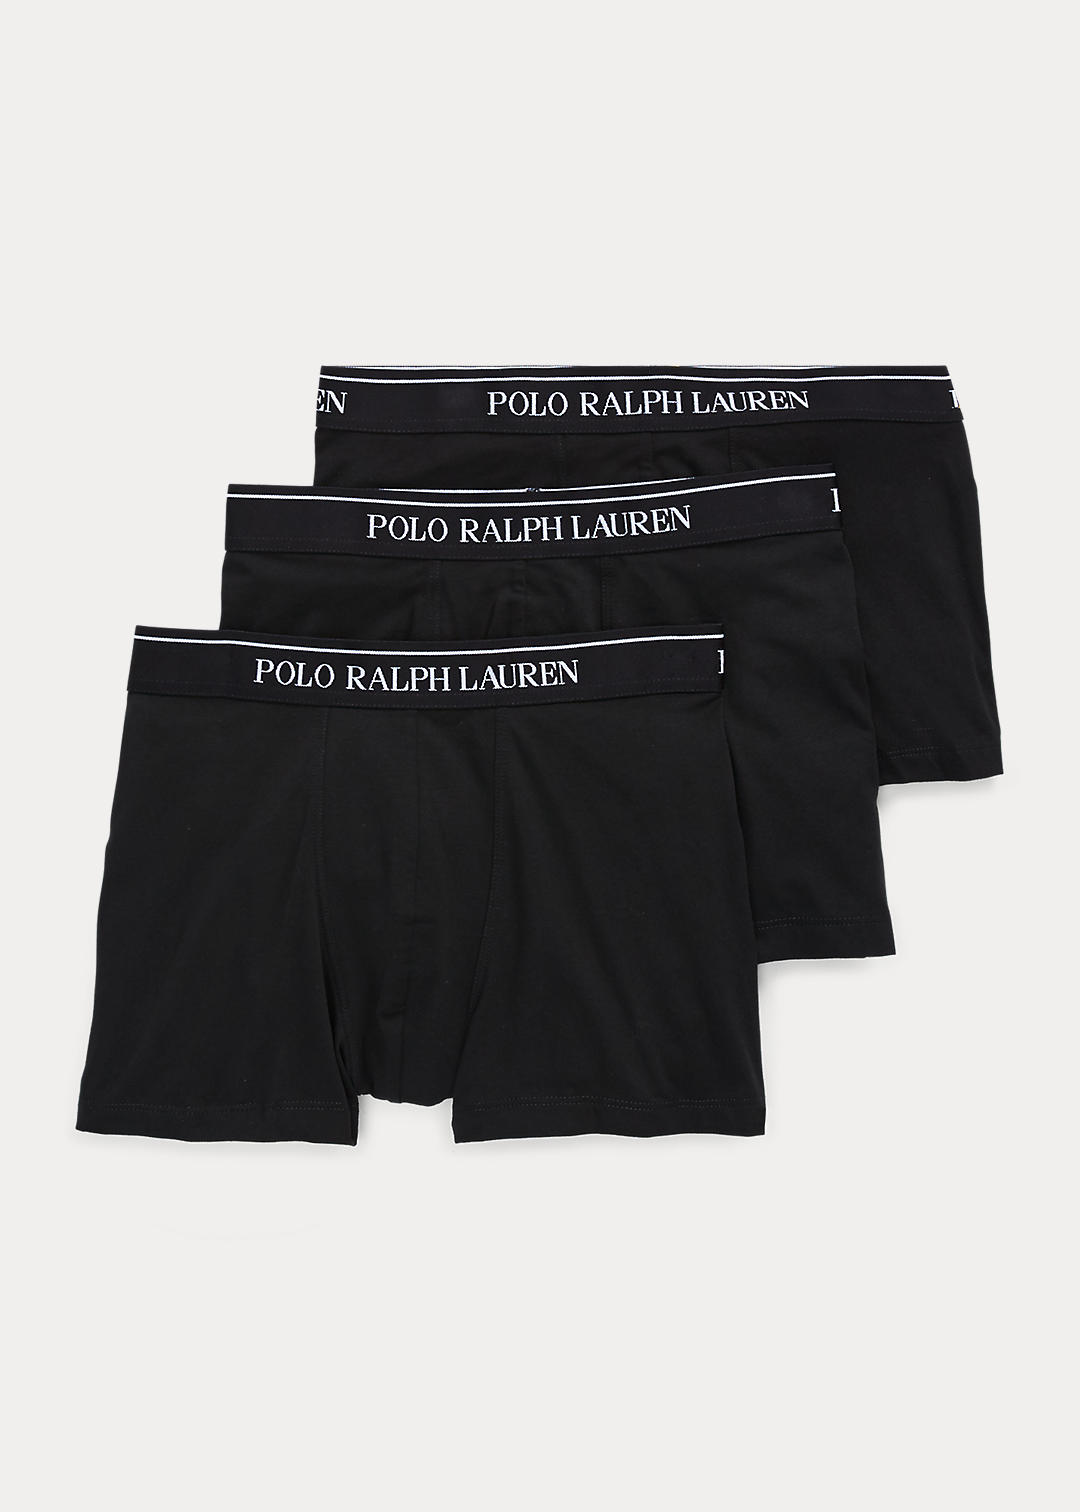 Polo Ralph Lauren Lot de 3 slip-boxers coton stretch 1